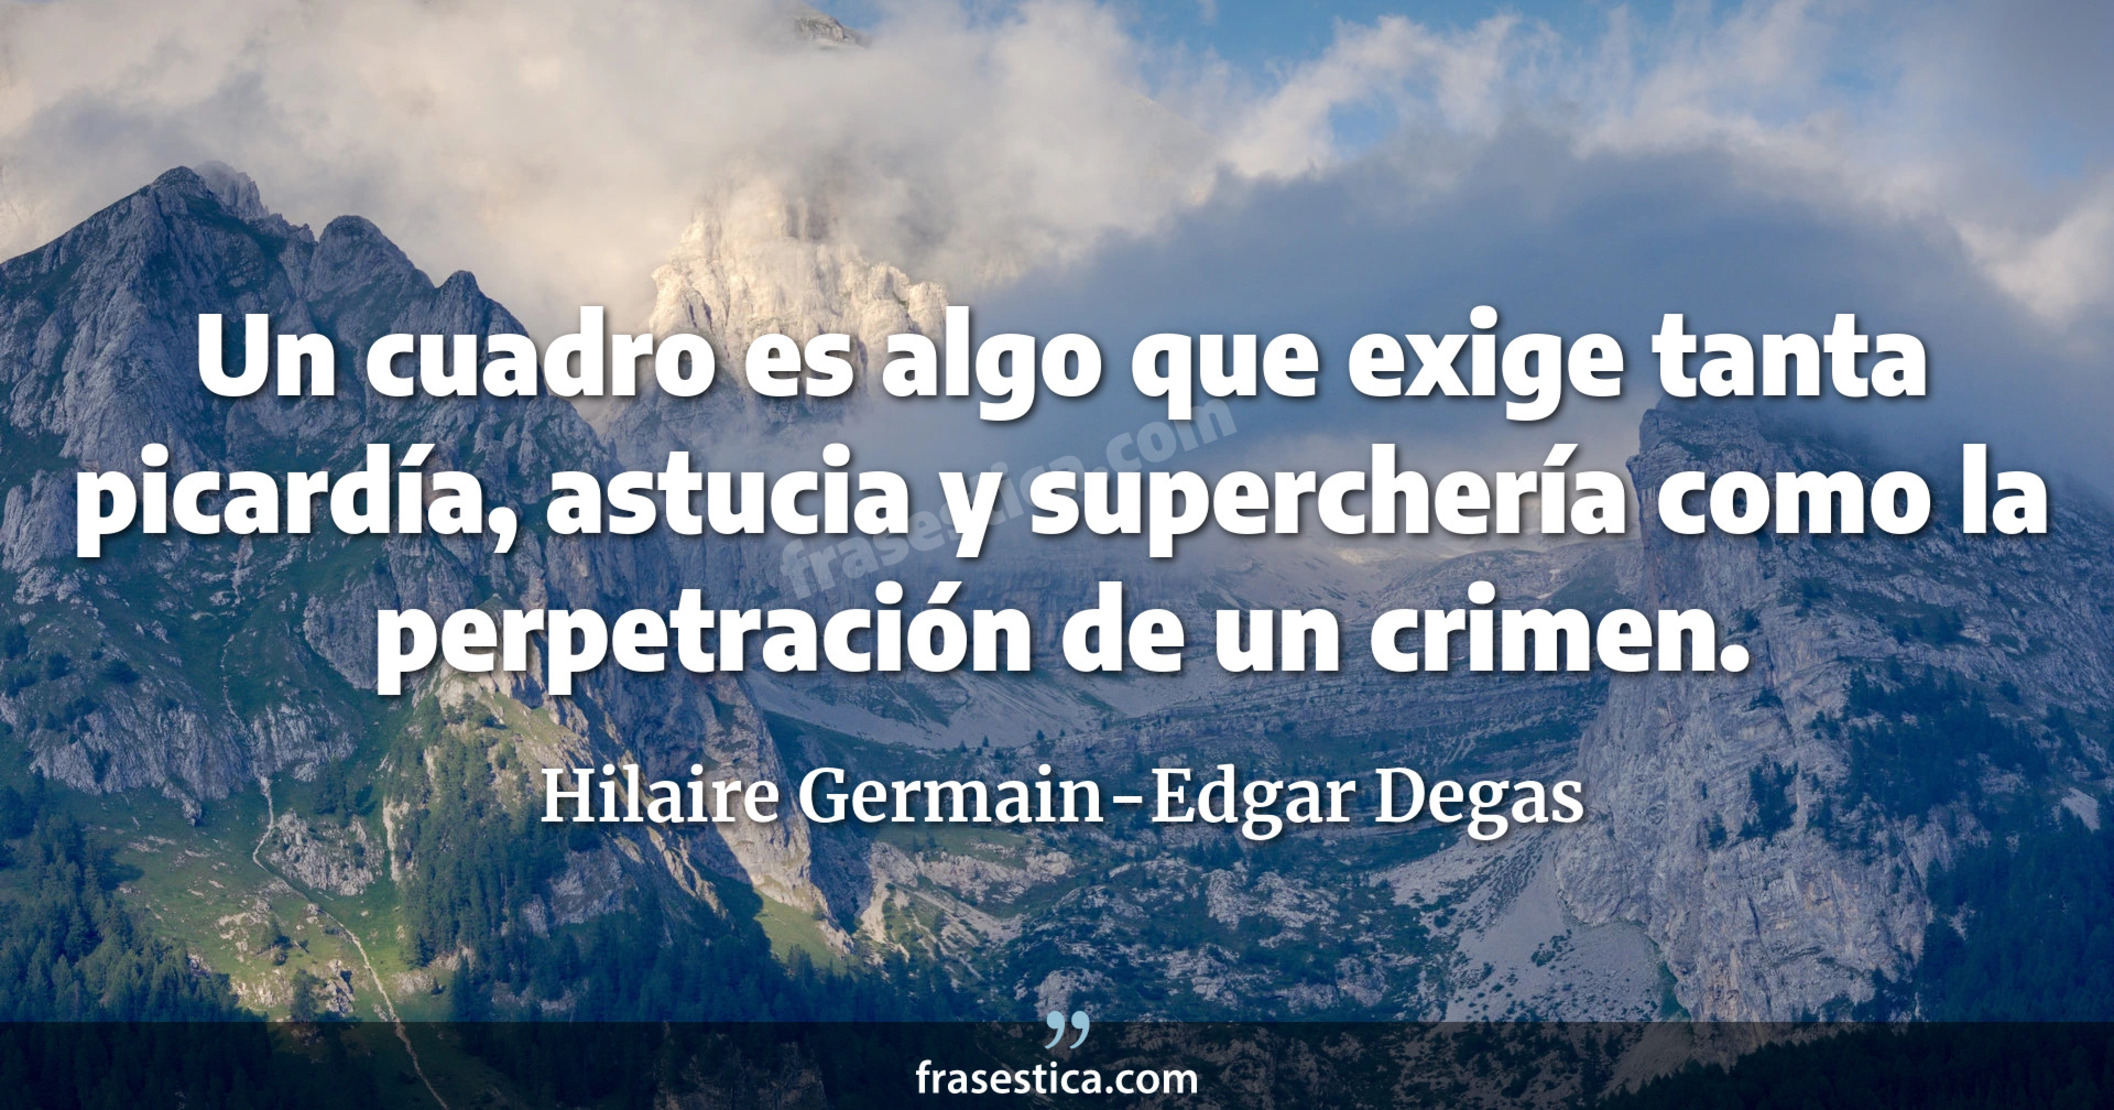 Un cuadro es algo que exige tanta picardía, astucia y superchería como la perpetración de un crimen. - Hilaire Germain-Edgar Degas